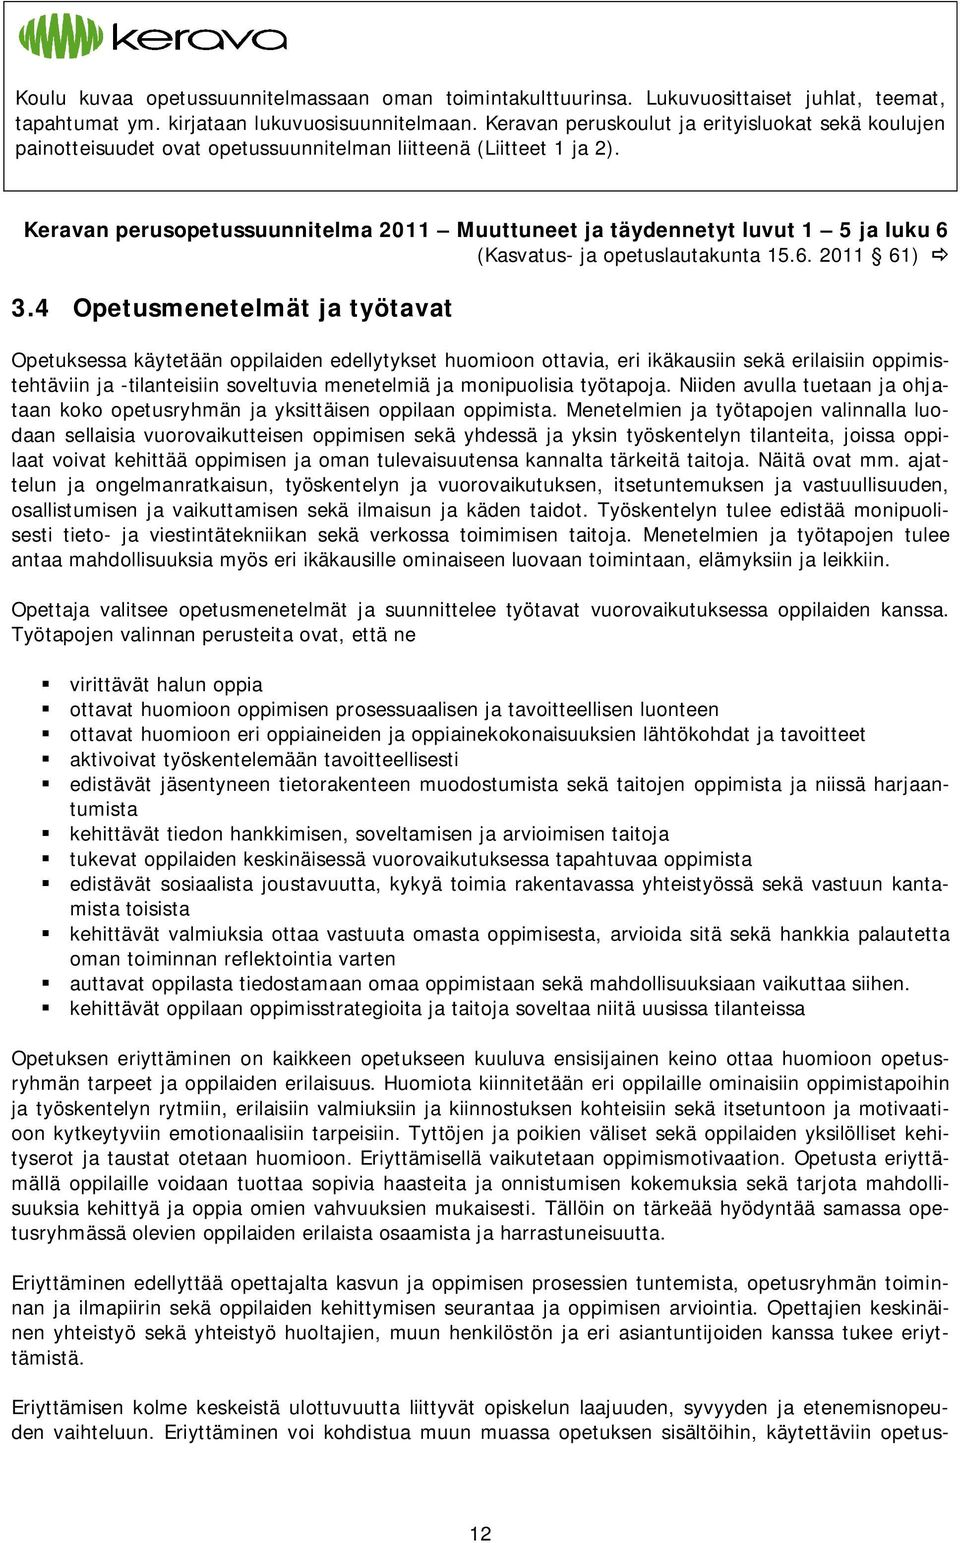 Keravan perusopetussuunnitelma 2011 Muuttuneet ja täydennetyt luvut 1 5 ja luku 6 (Kasvatus- ja opetuslautakunta 15.6. 2011 61) 3.